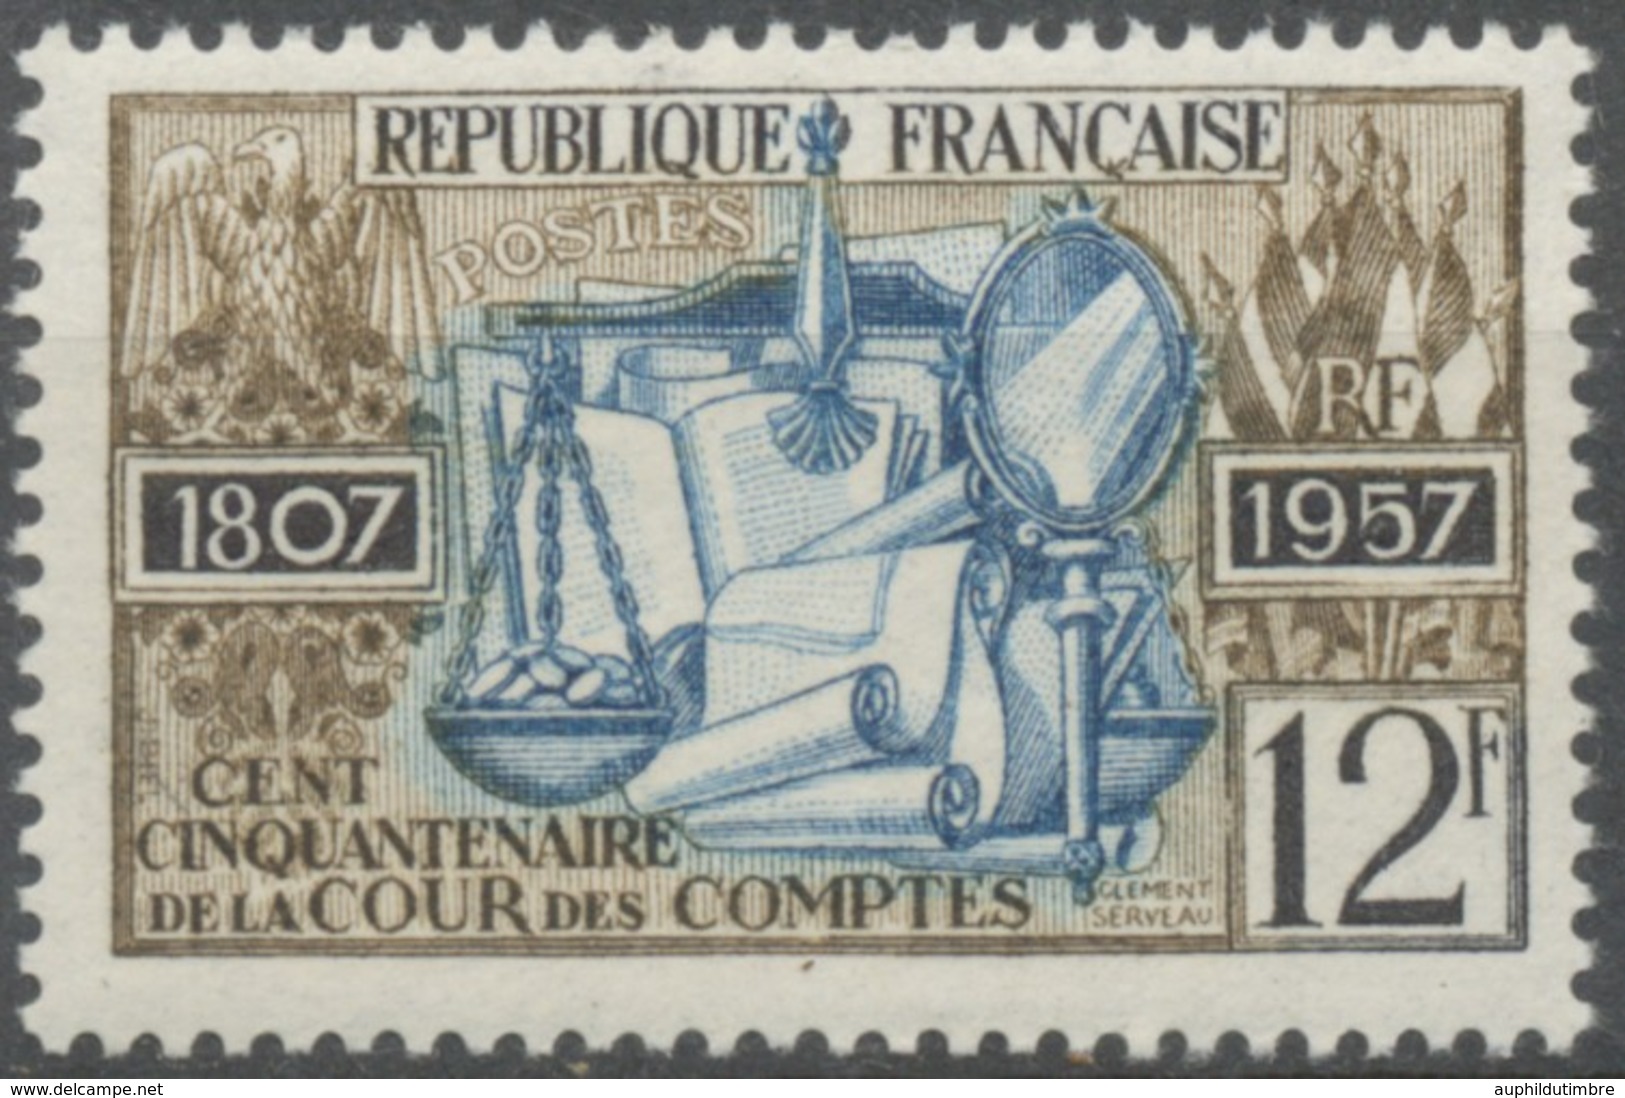 Sesquicentenaire De La Cour Des Comptes. 12f. Brun-olive, Noir Et Bleu. Neuf Luxe ** Y1107 - Nuovi